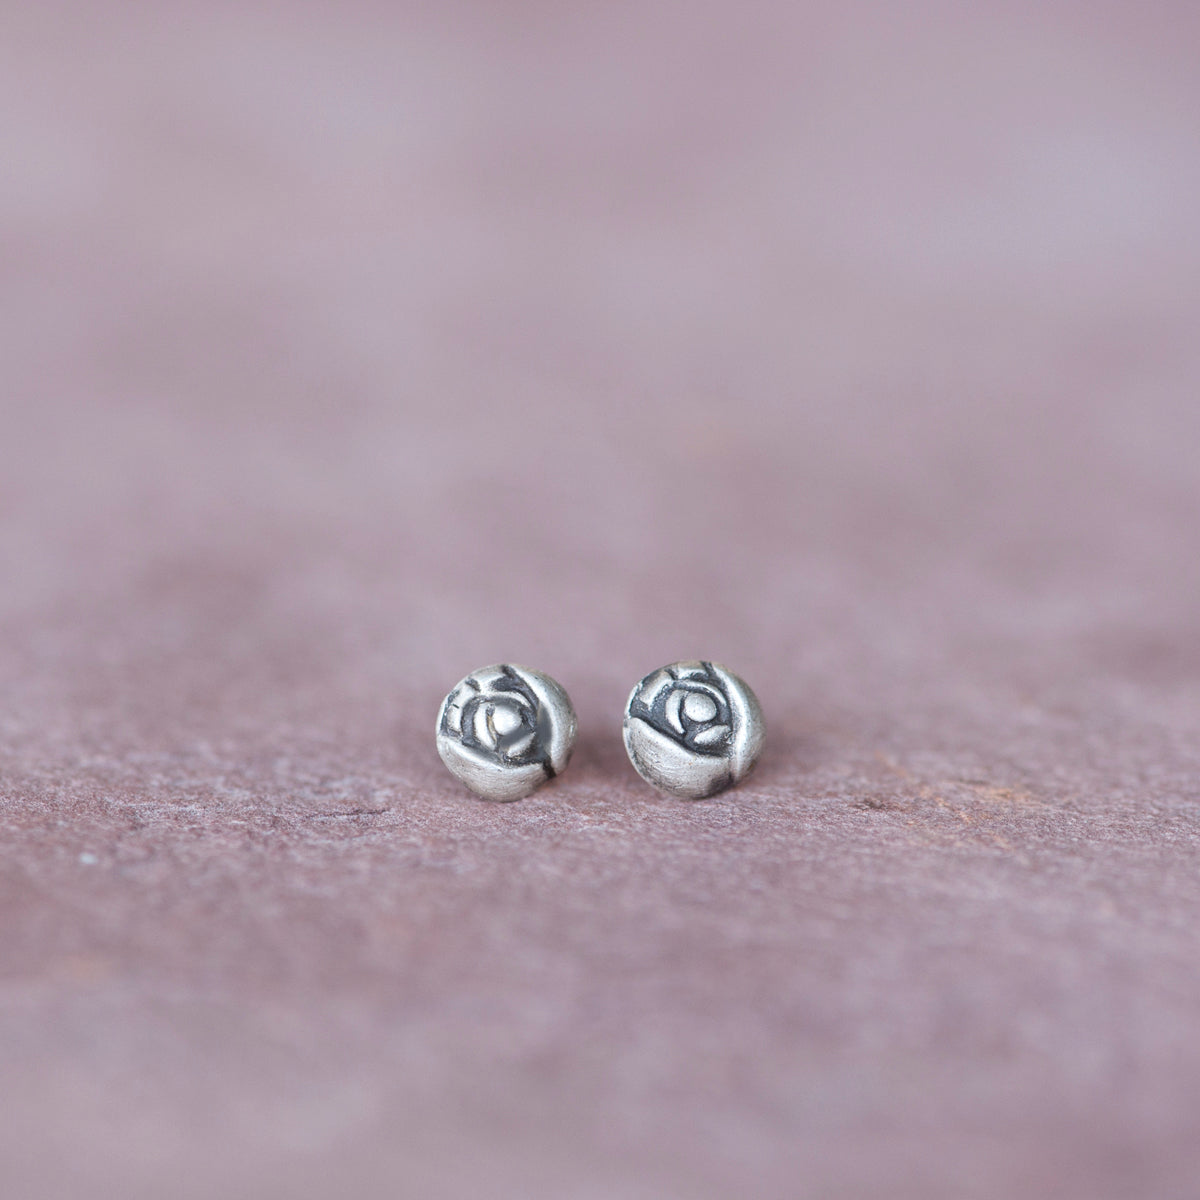 Silver Rose Bud Stud Earrings from Jester Swink - Jester Swink